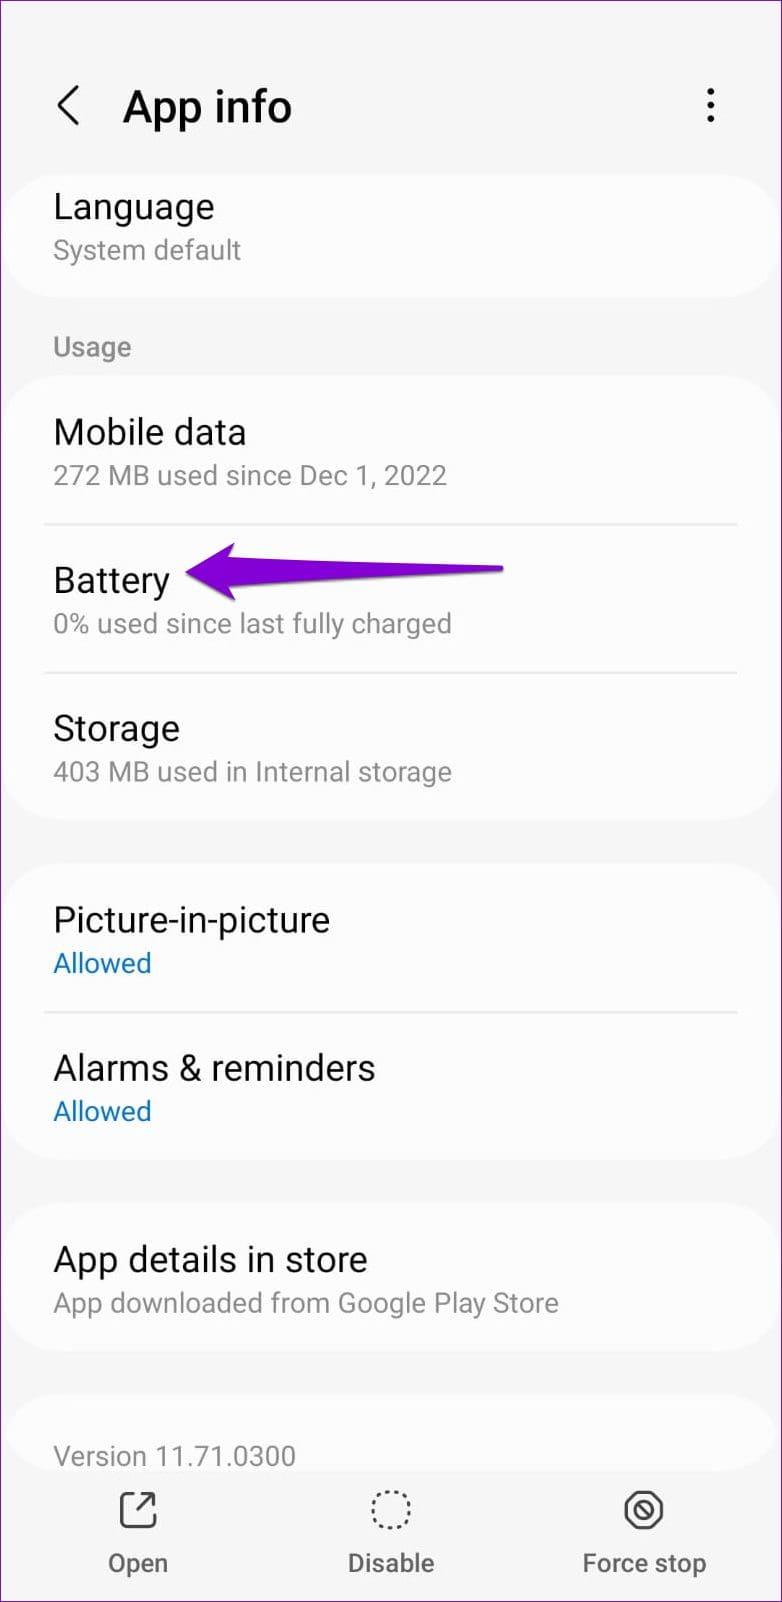 Nove maneiras principais de consertar o esgotamento da bateria do Google Maps no Android e iPhone